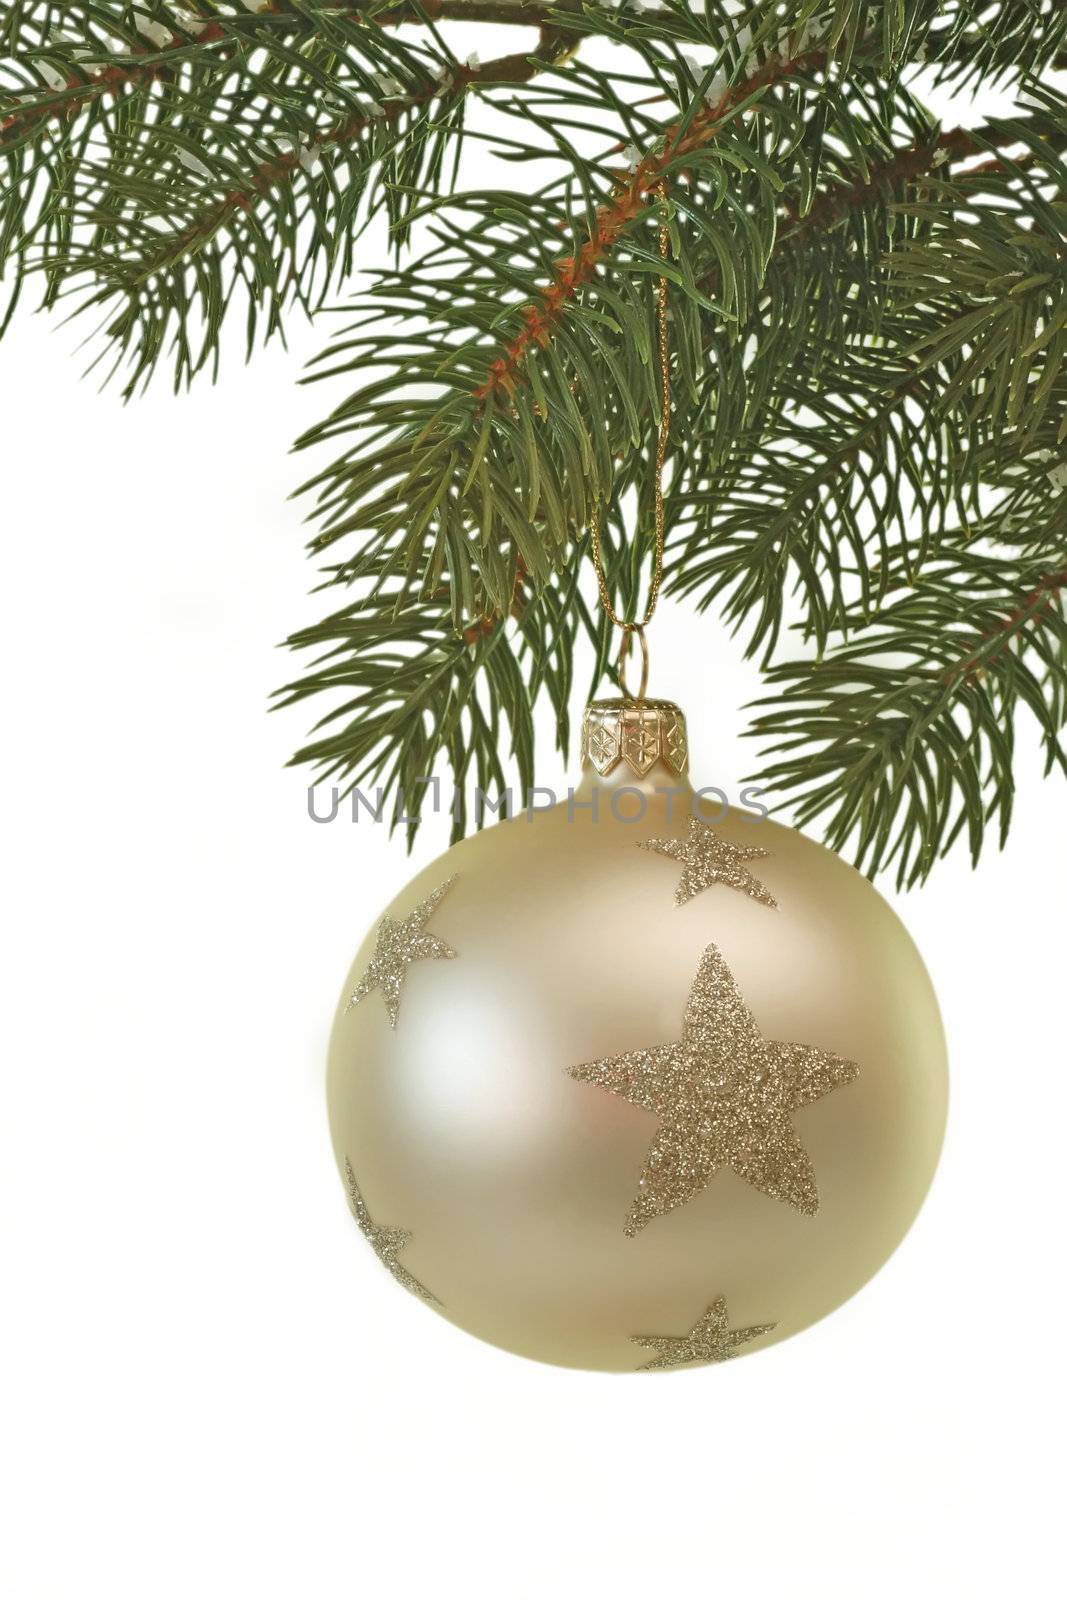 White christmas glitter ball hanging on a fir branch